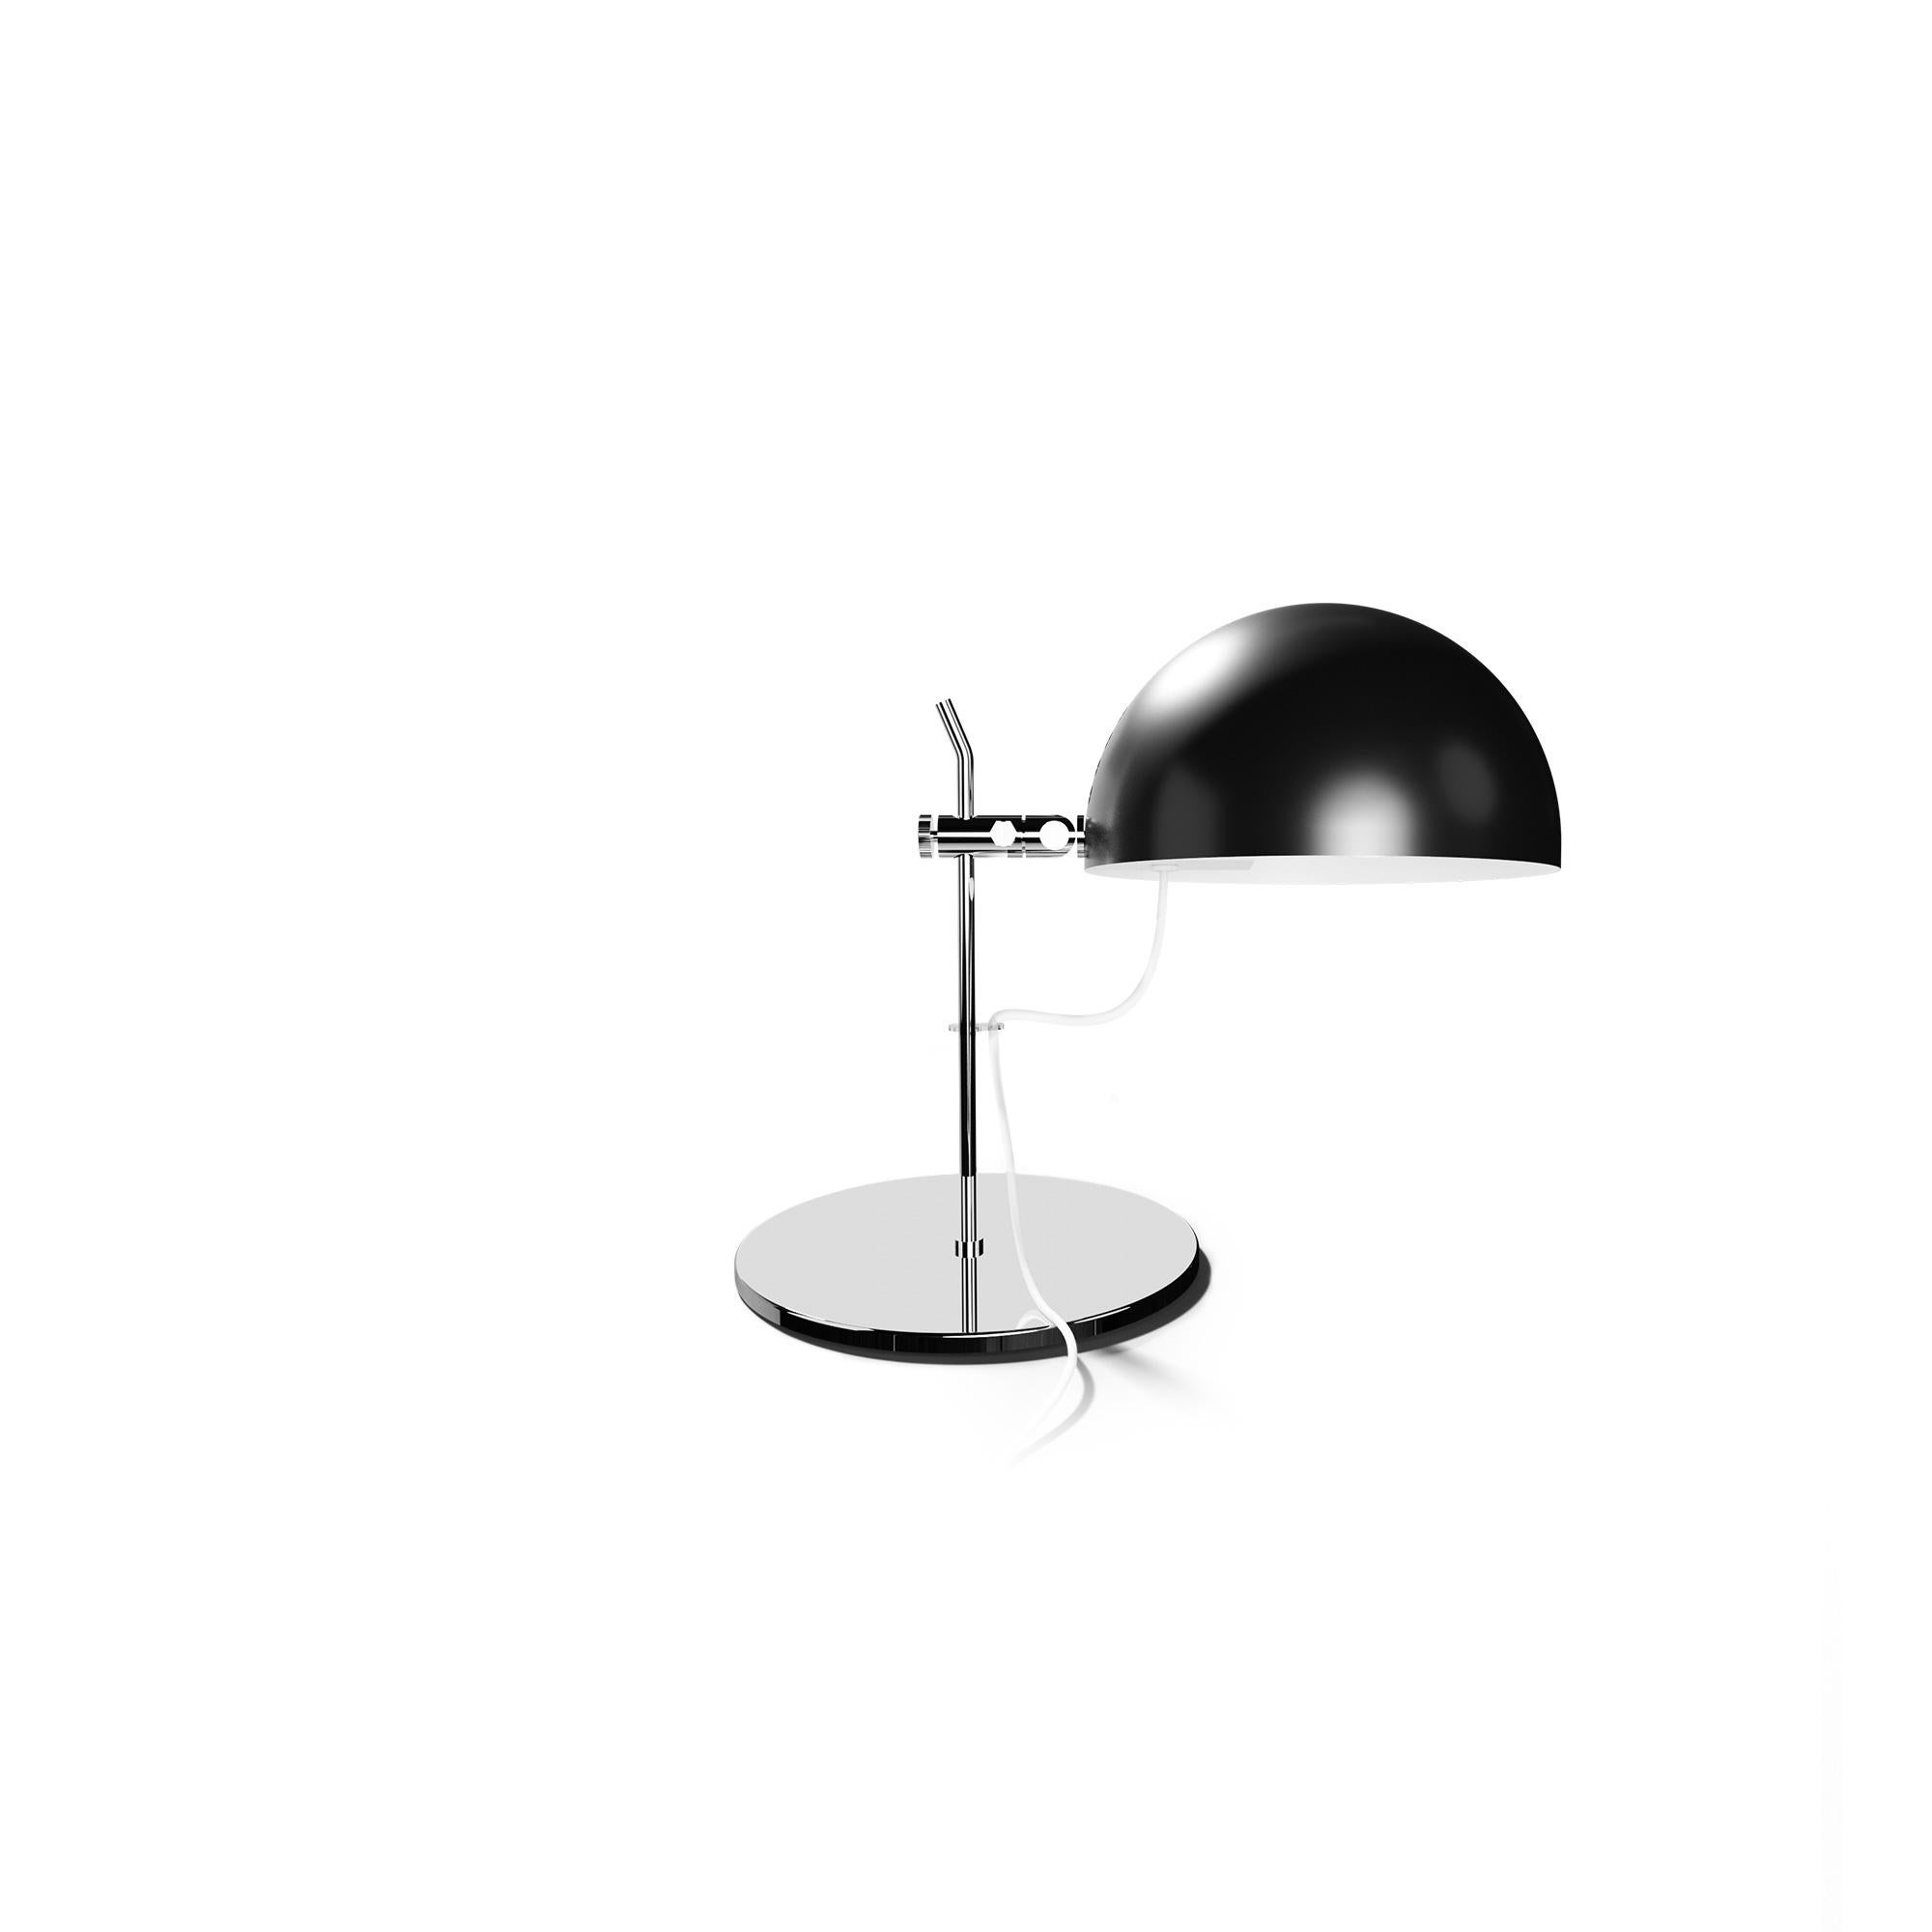 Alain Richard 'A22' Desk Lamp in Chrome for Disderot For Sale 1